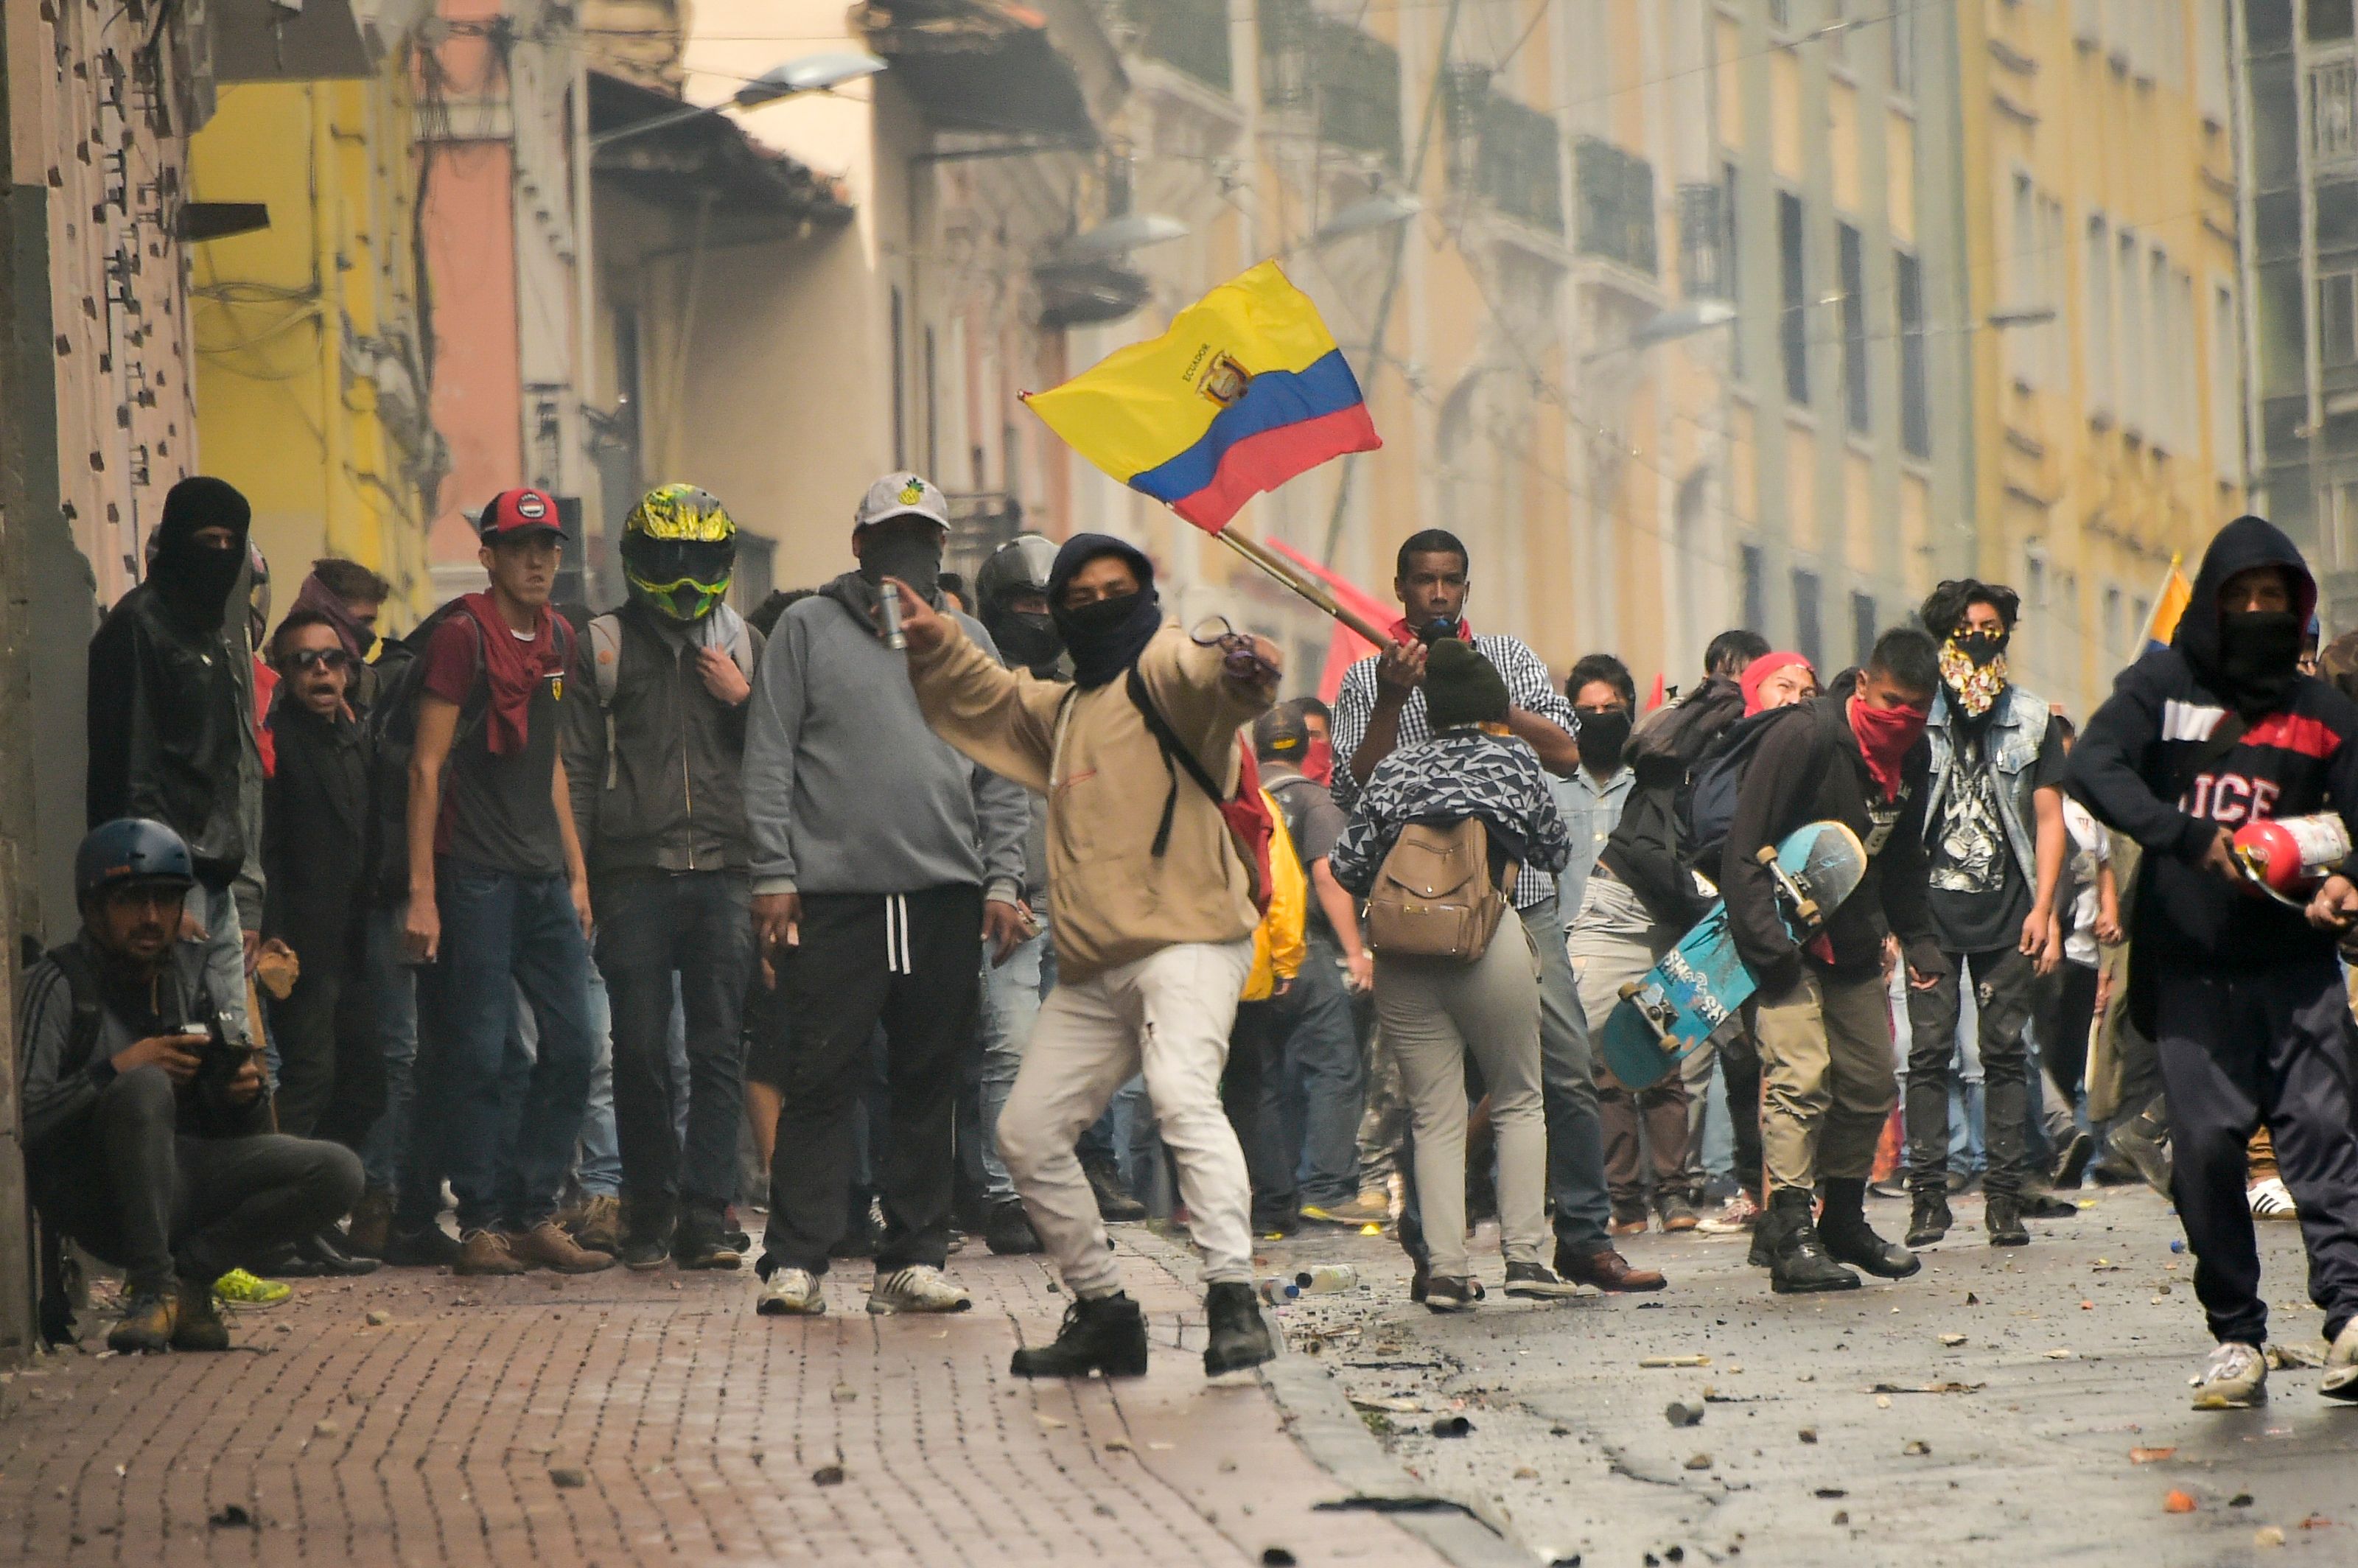 Durante la jornada hubo choques de manifestantes y la policía, así como saqueos a comercios. (Foto Prensa Libre: AFP)